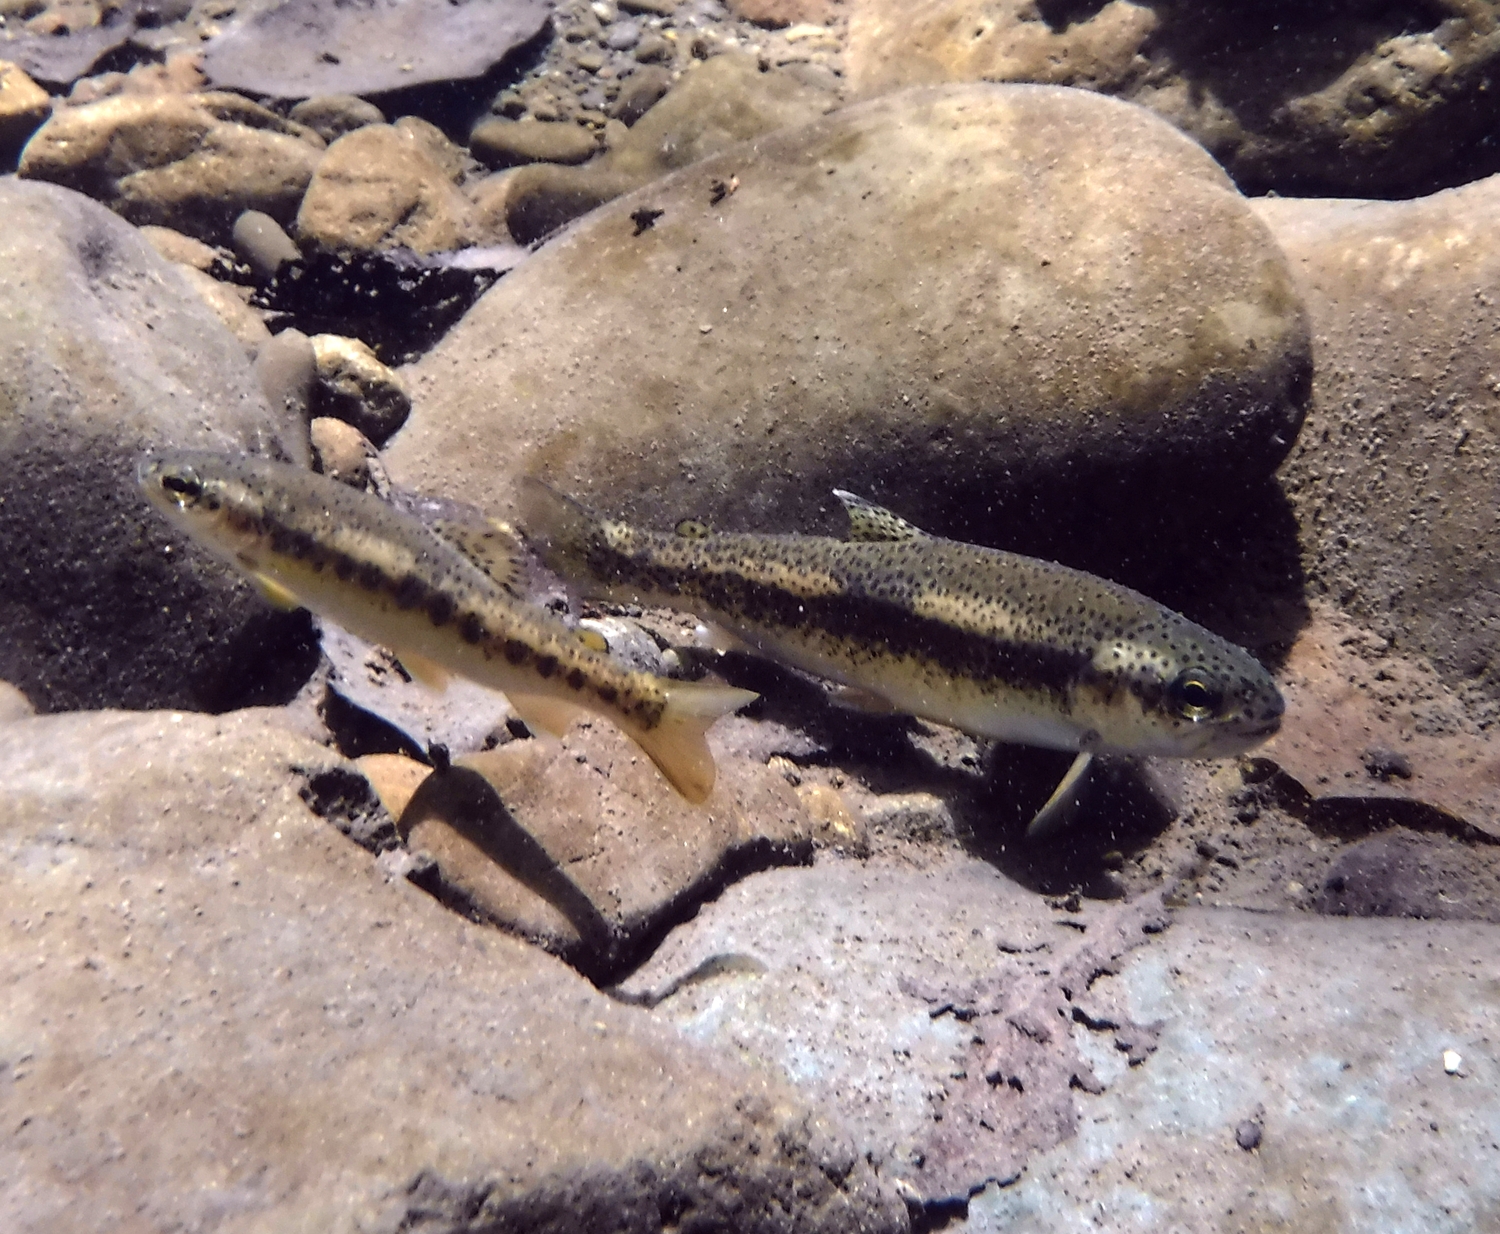 Steelhead trout fry